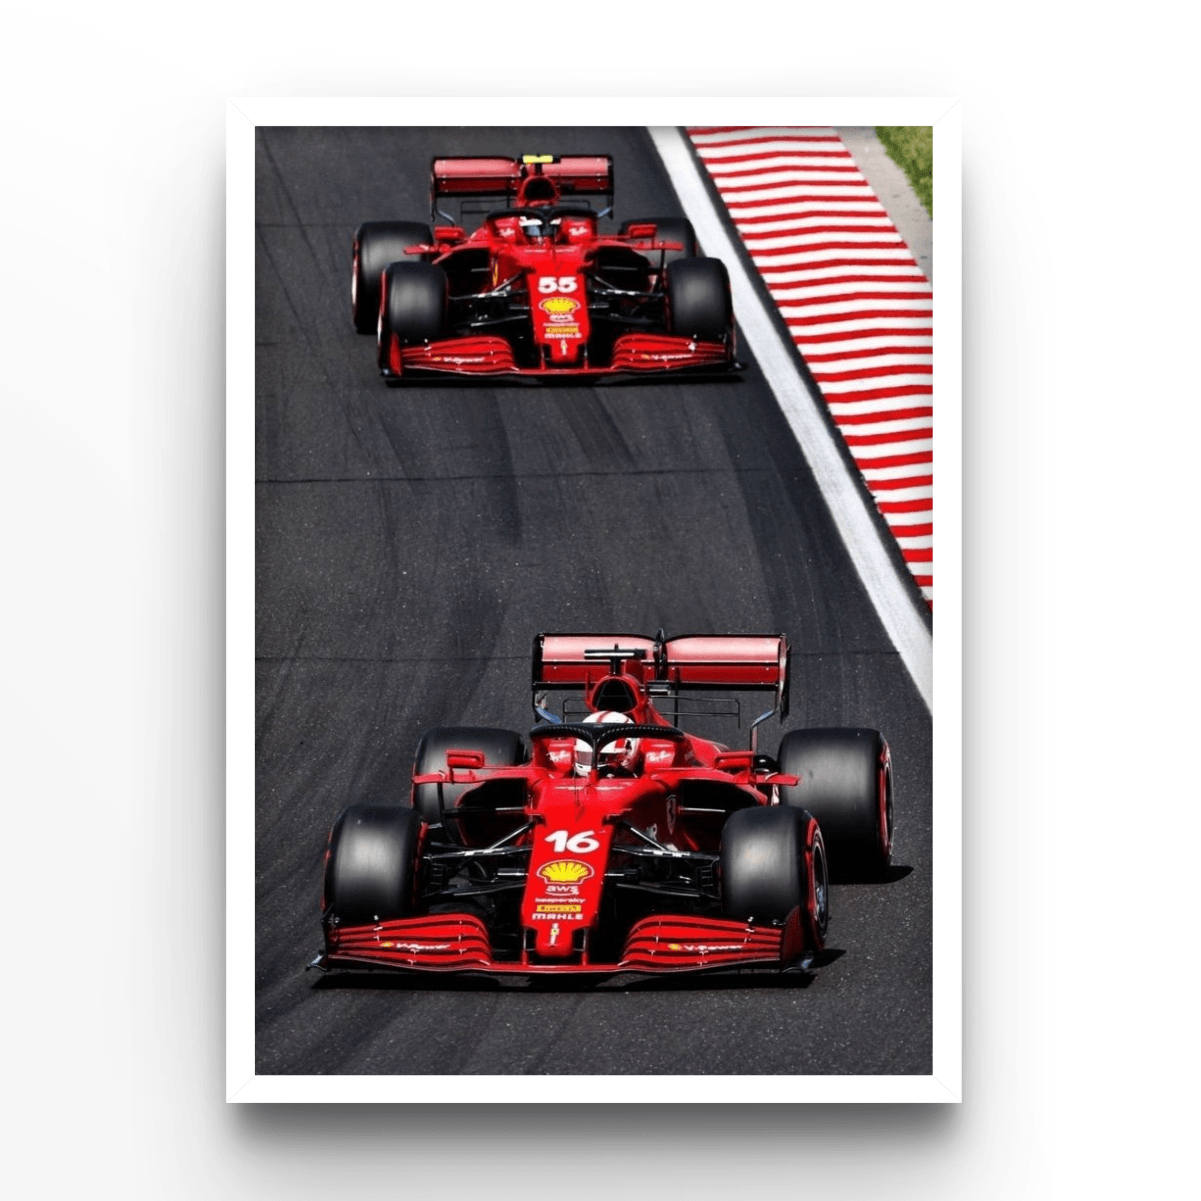 Ferrari Drivers - A4, A3, A2 Posters Base - Poster Print Shop / Art Prints / PostersBase